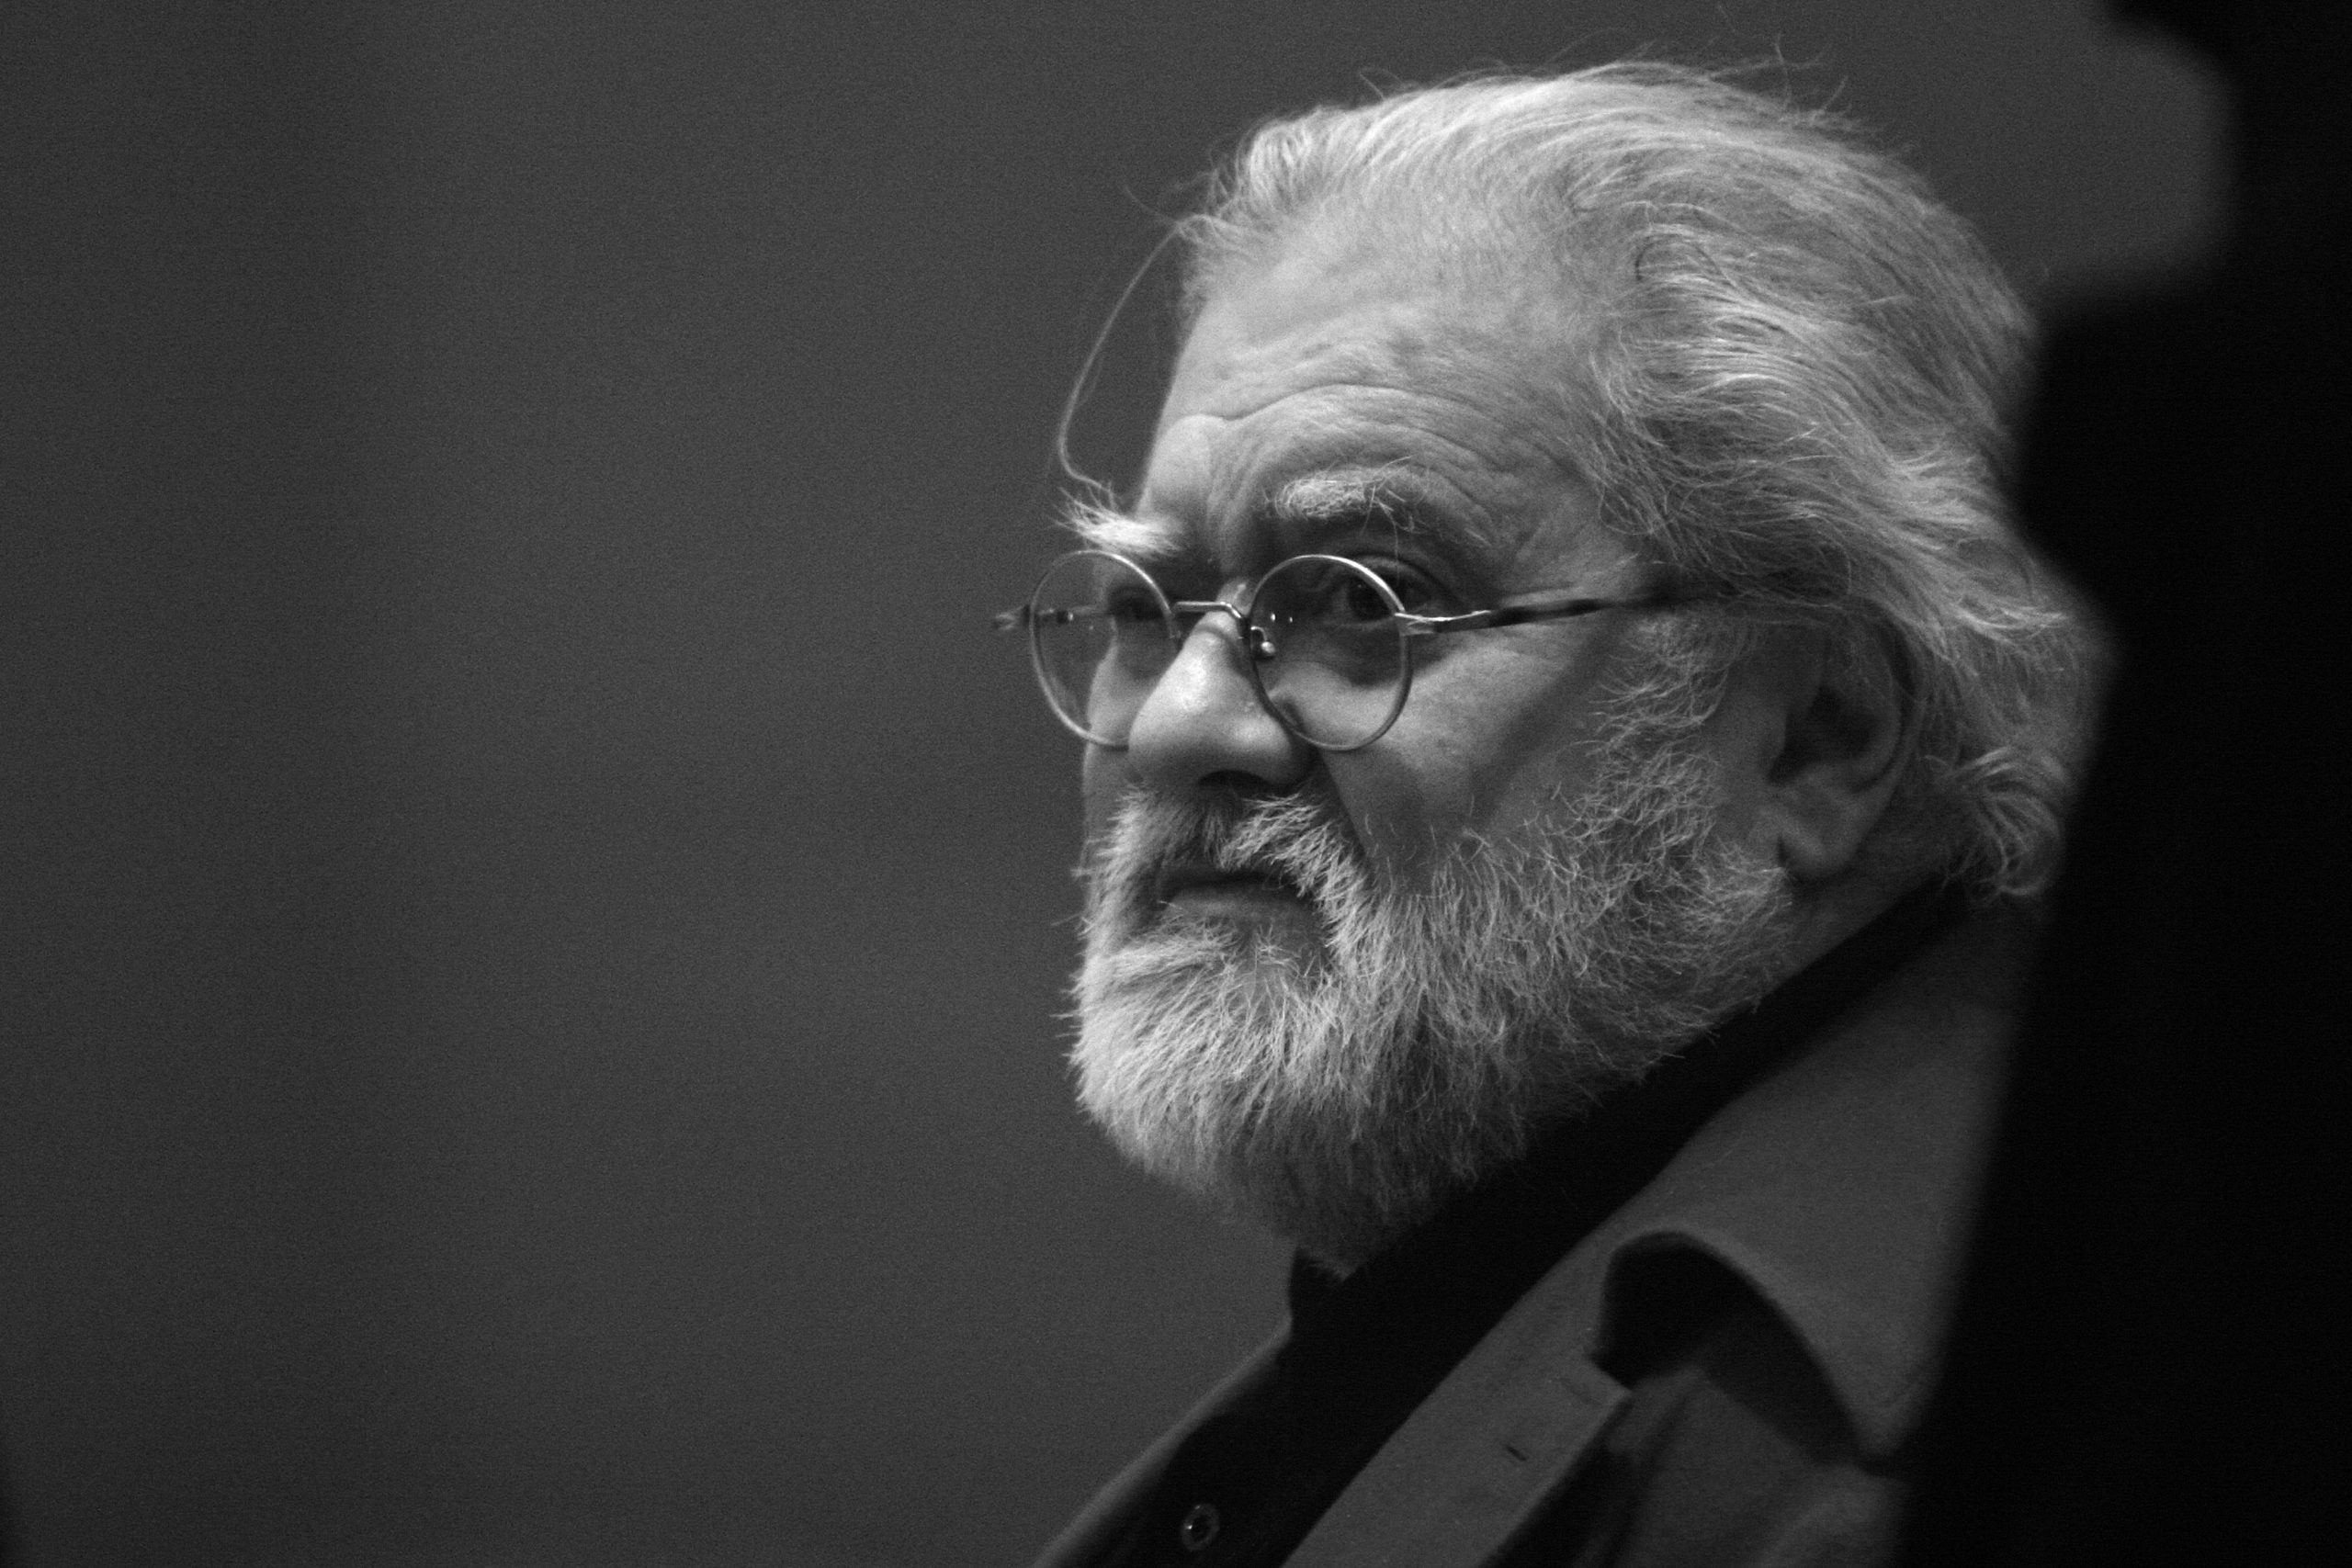 Der französische Komponist und Mitbegründer der Konkreten Musik Pierre Henry (1927-2017) in der Cite de la Musique, Foto von 2008. Foto: Imago/Leemage